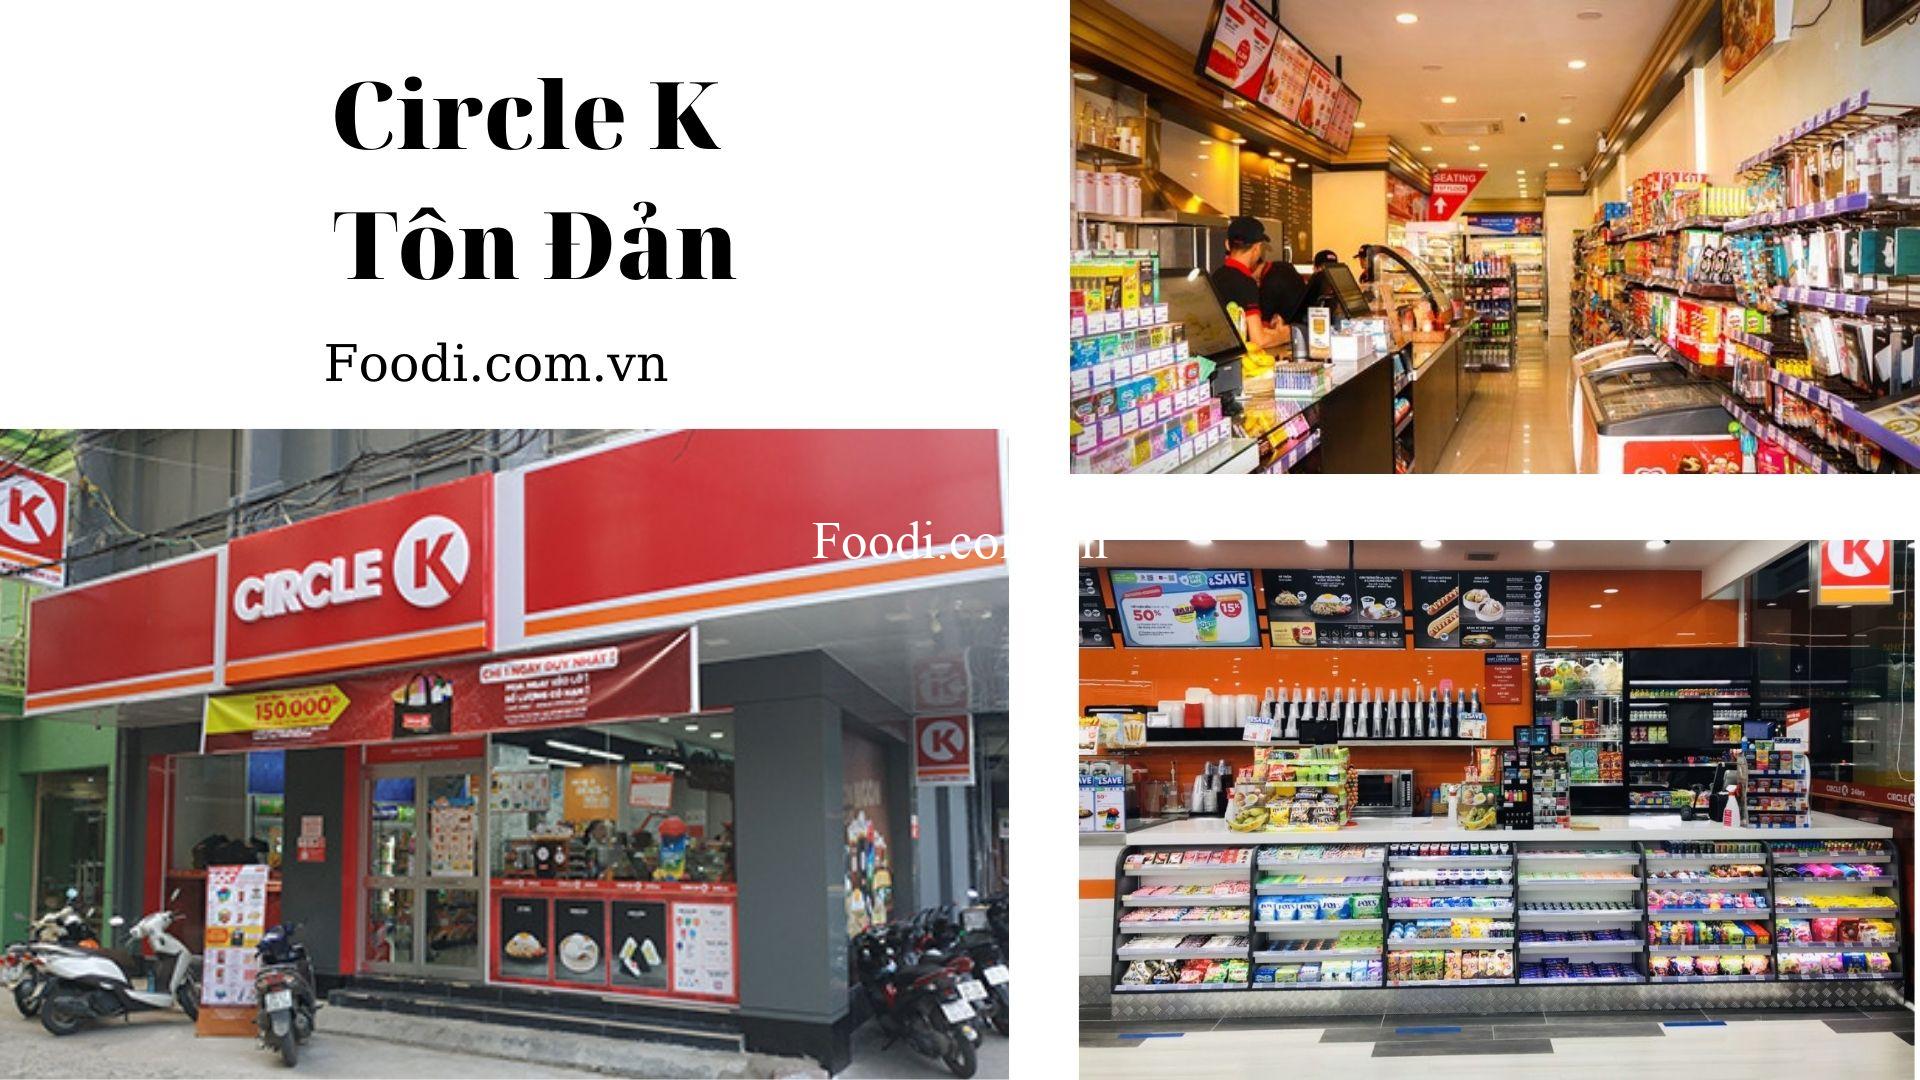 Top 20 chi nhánh cửa hàng Circle K nổi tiếng ở Sài Gòn gần đây